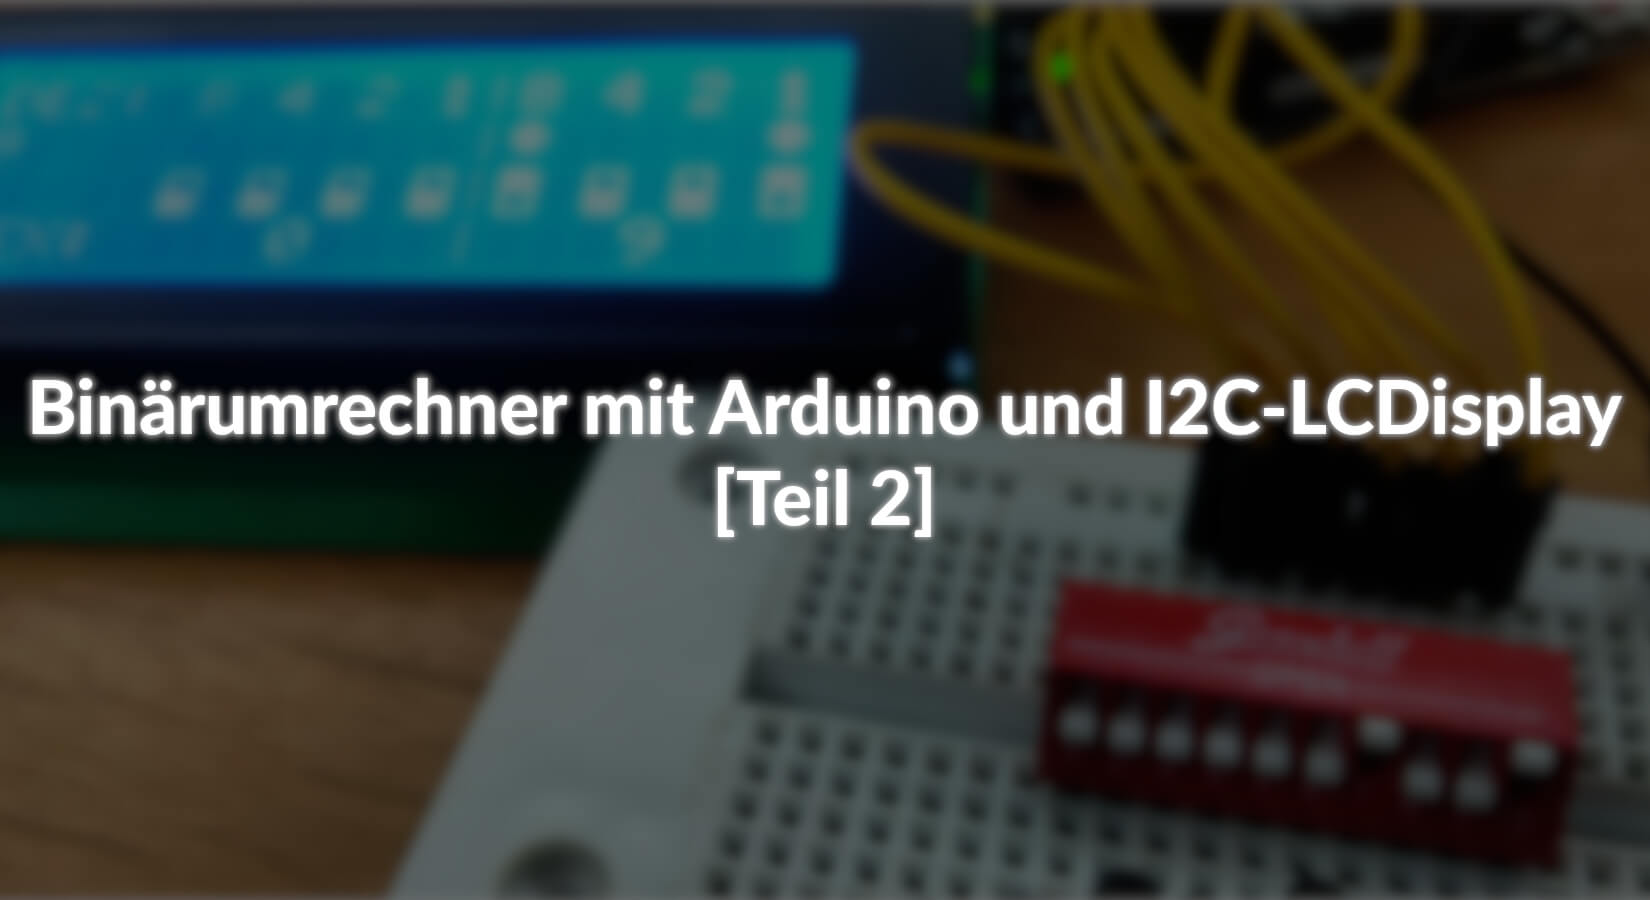 Binärumrechner mit Arduino und I2C-LCD-Display - [Teil 2] - AZ-Delivery